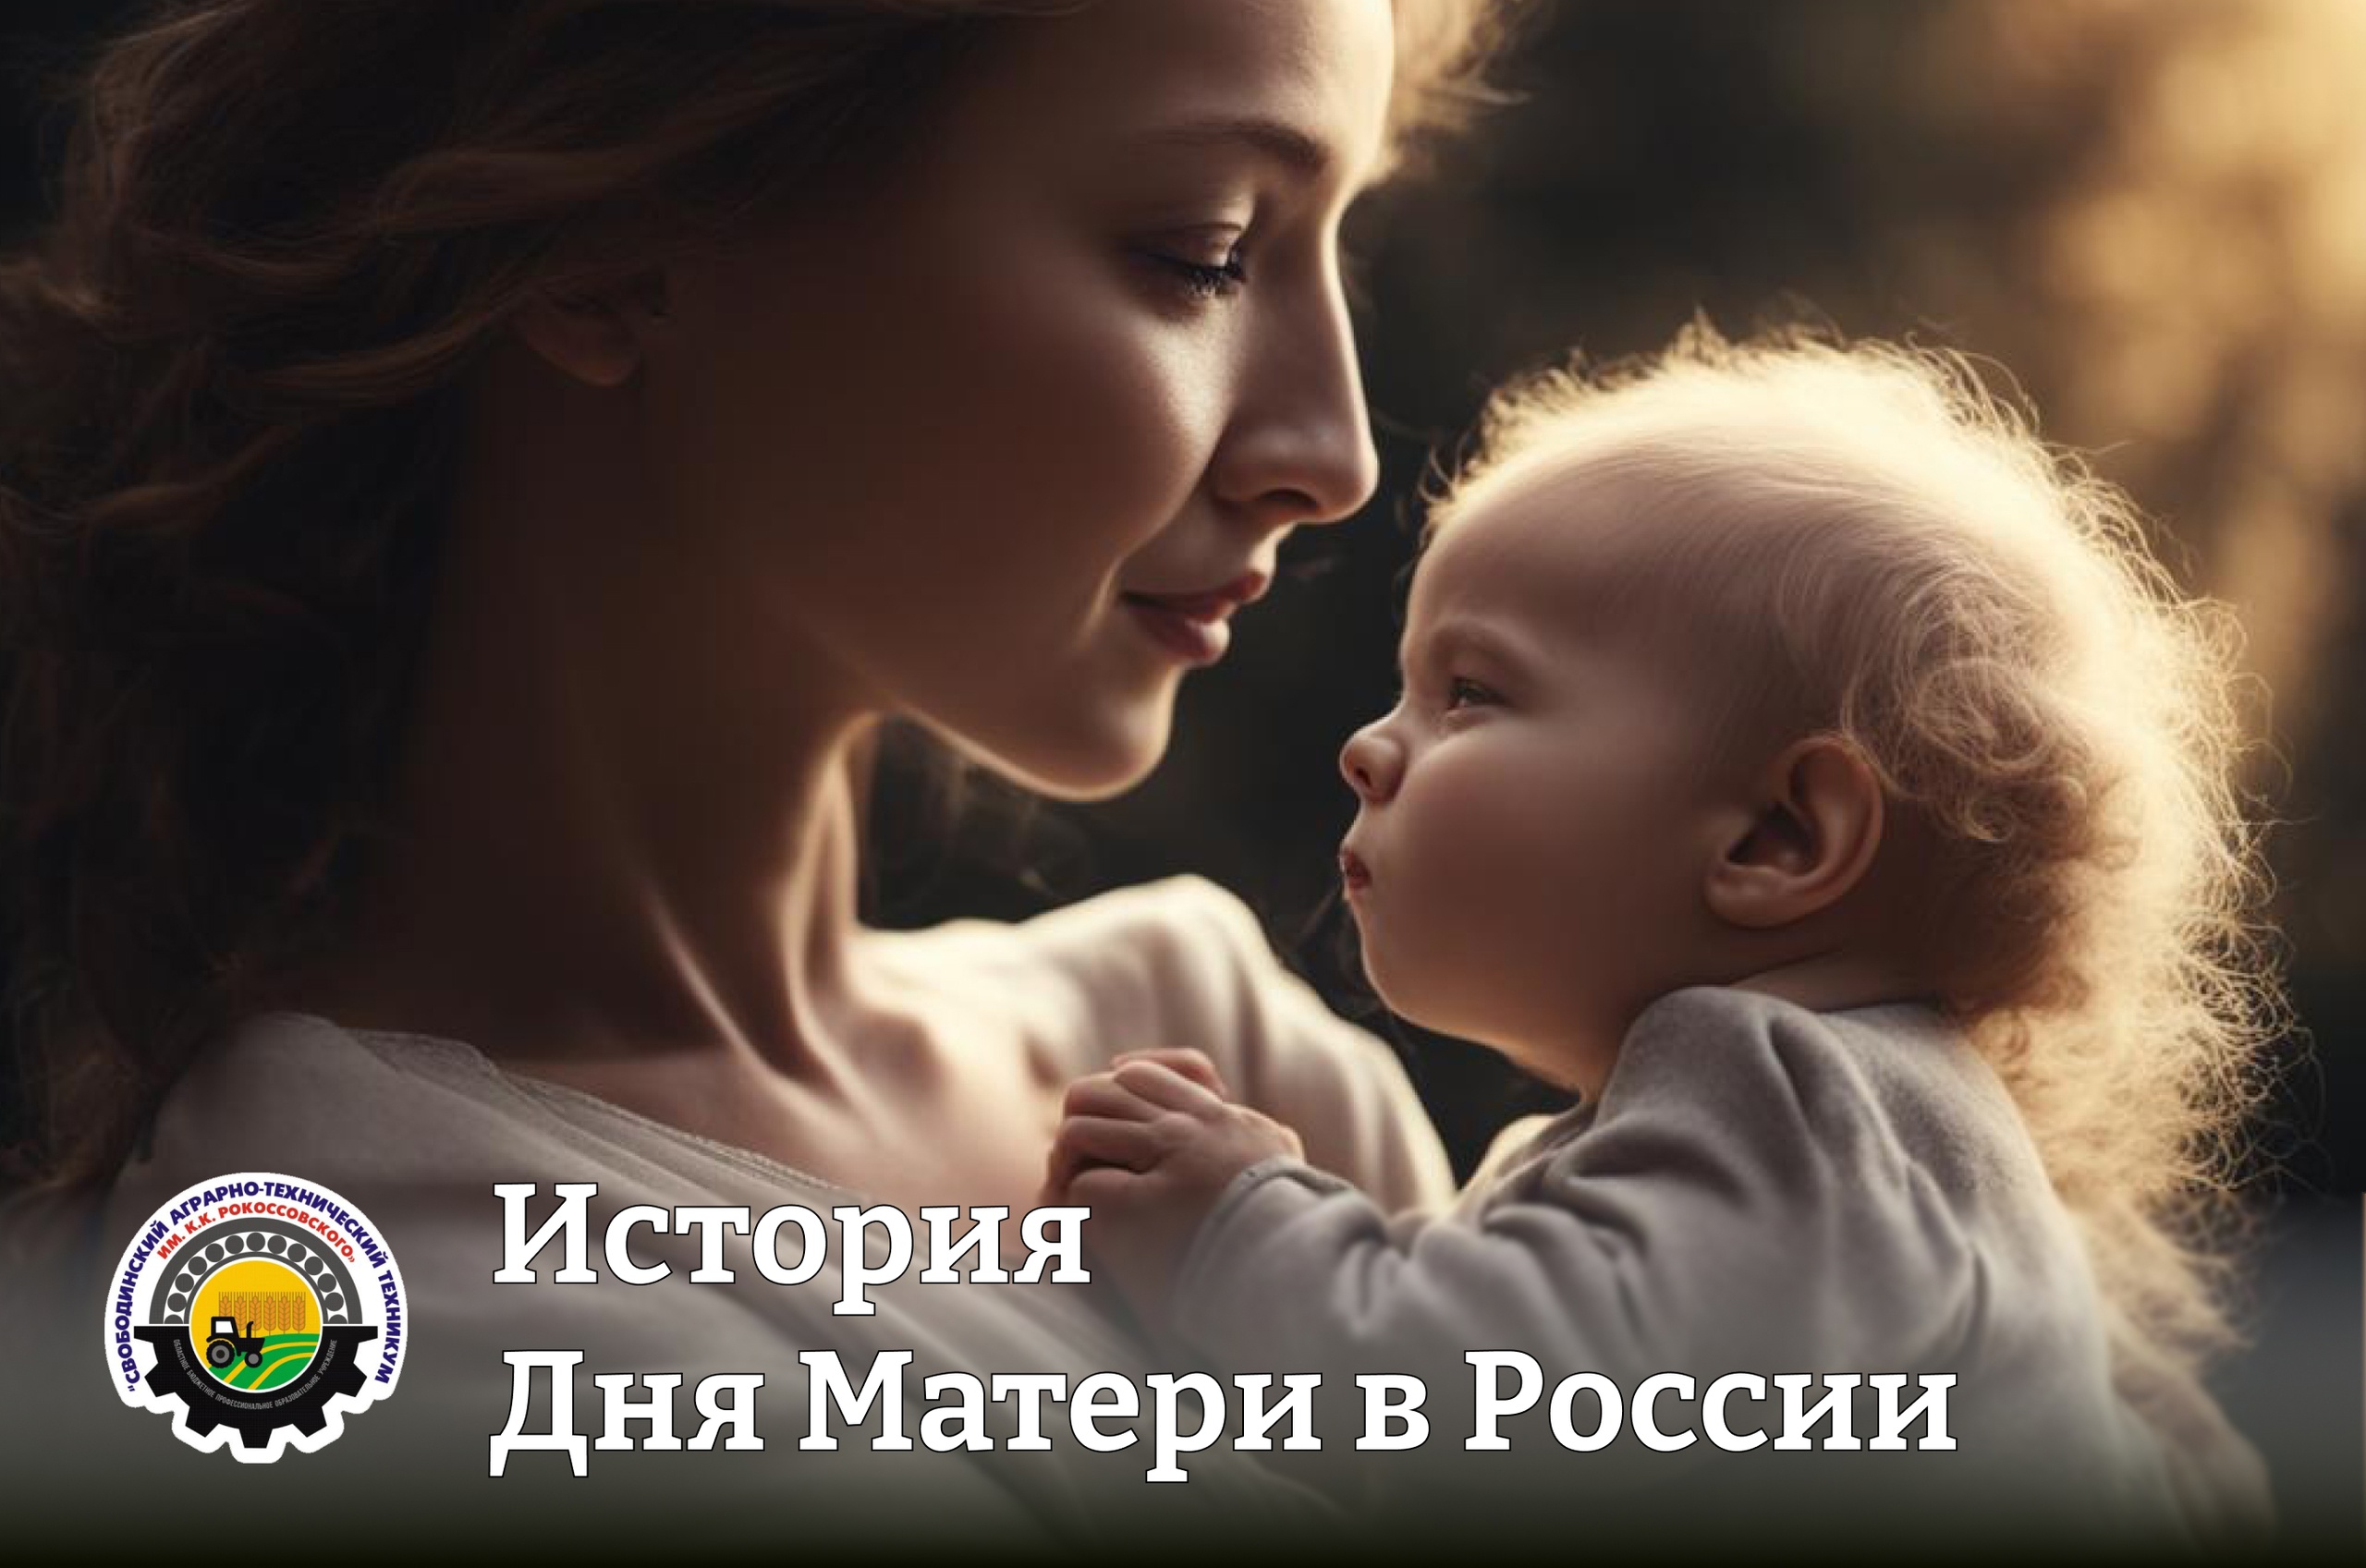 Как День матери появился в России?